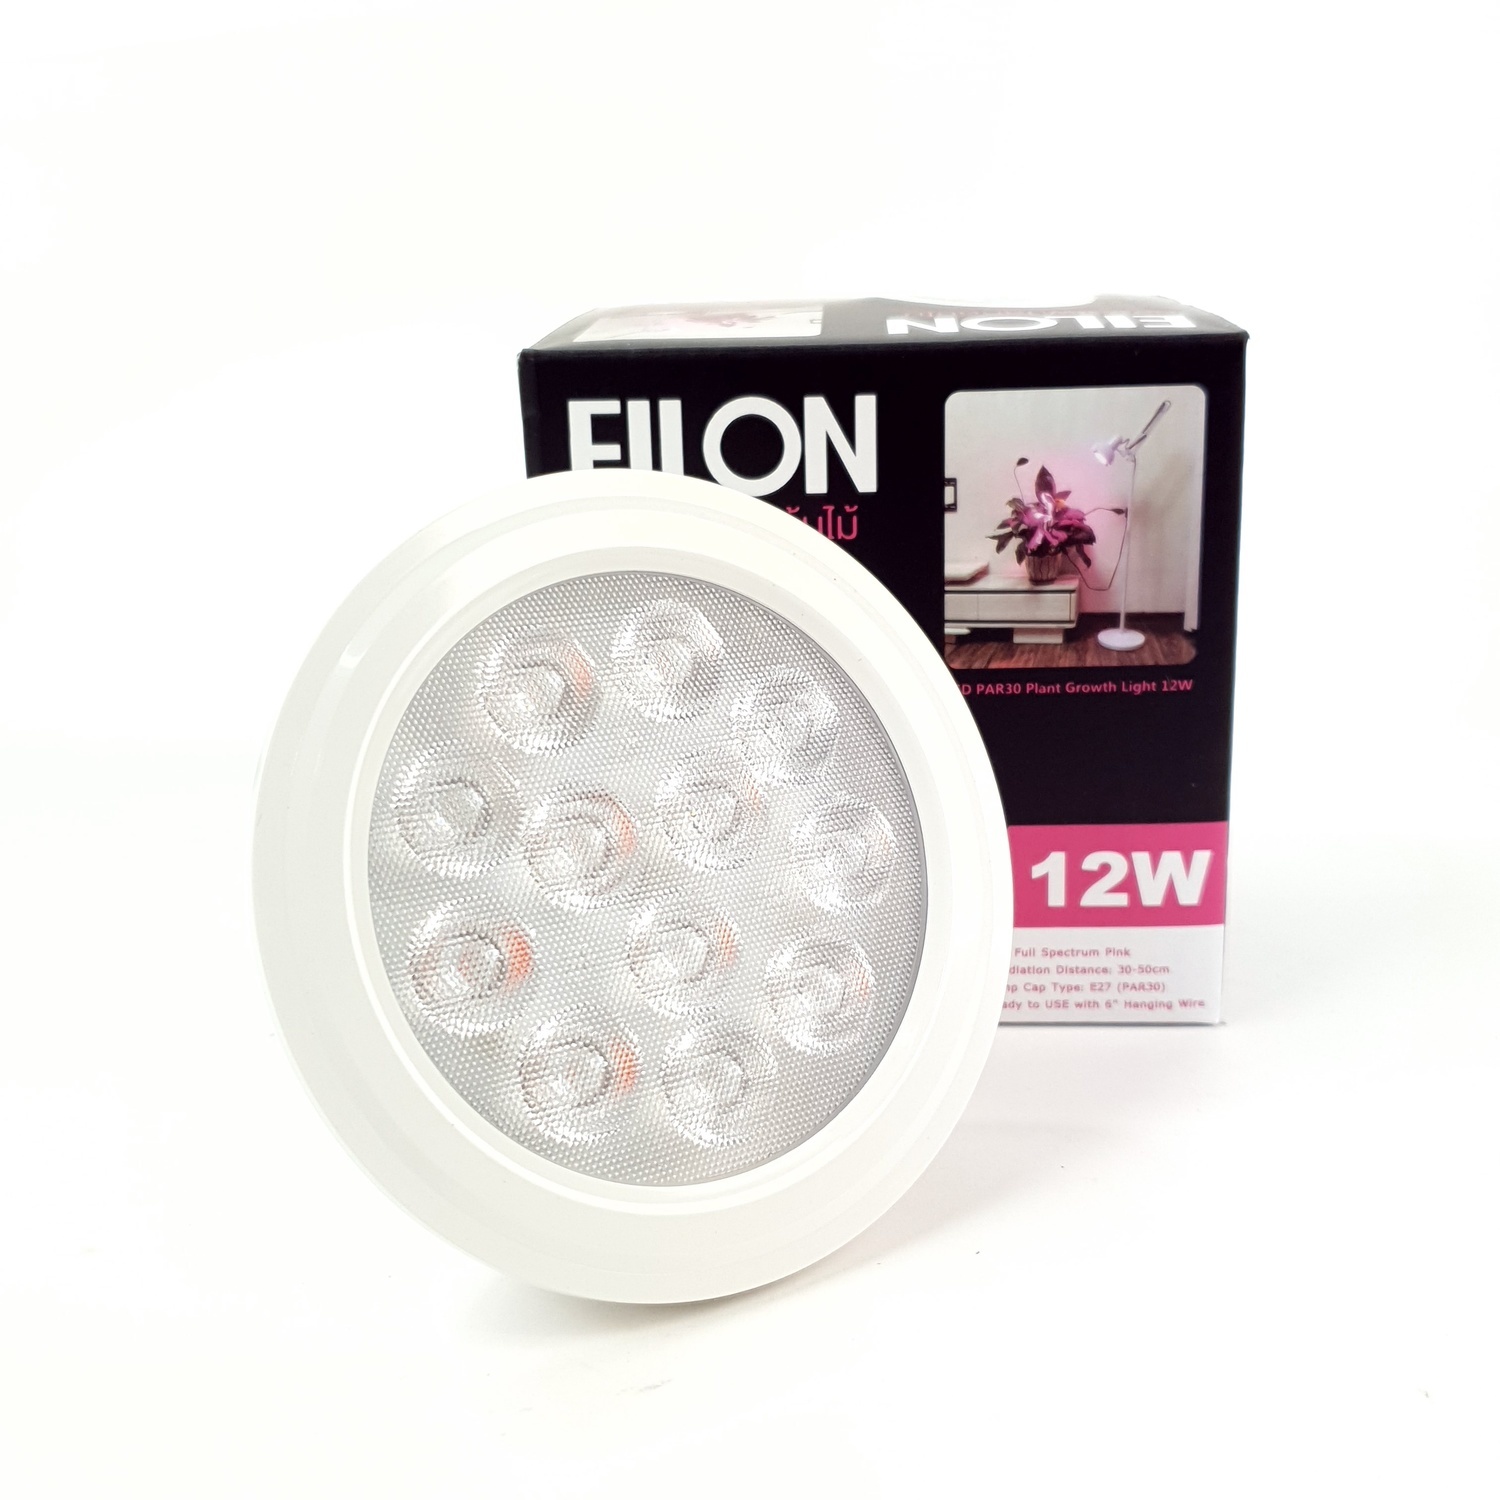 EILON หลอดไฟปลูกต้นไม้ LED 12W ขั้ว E27 รุ่น P30-ZW01